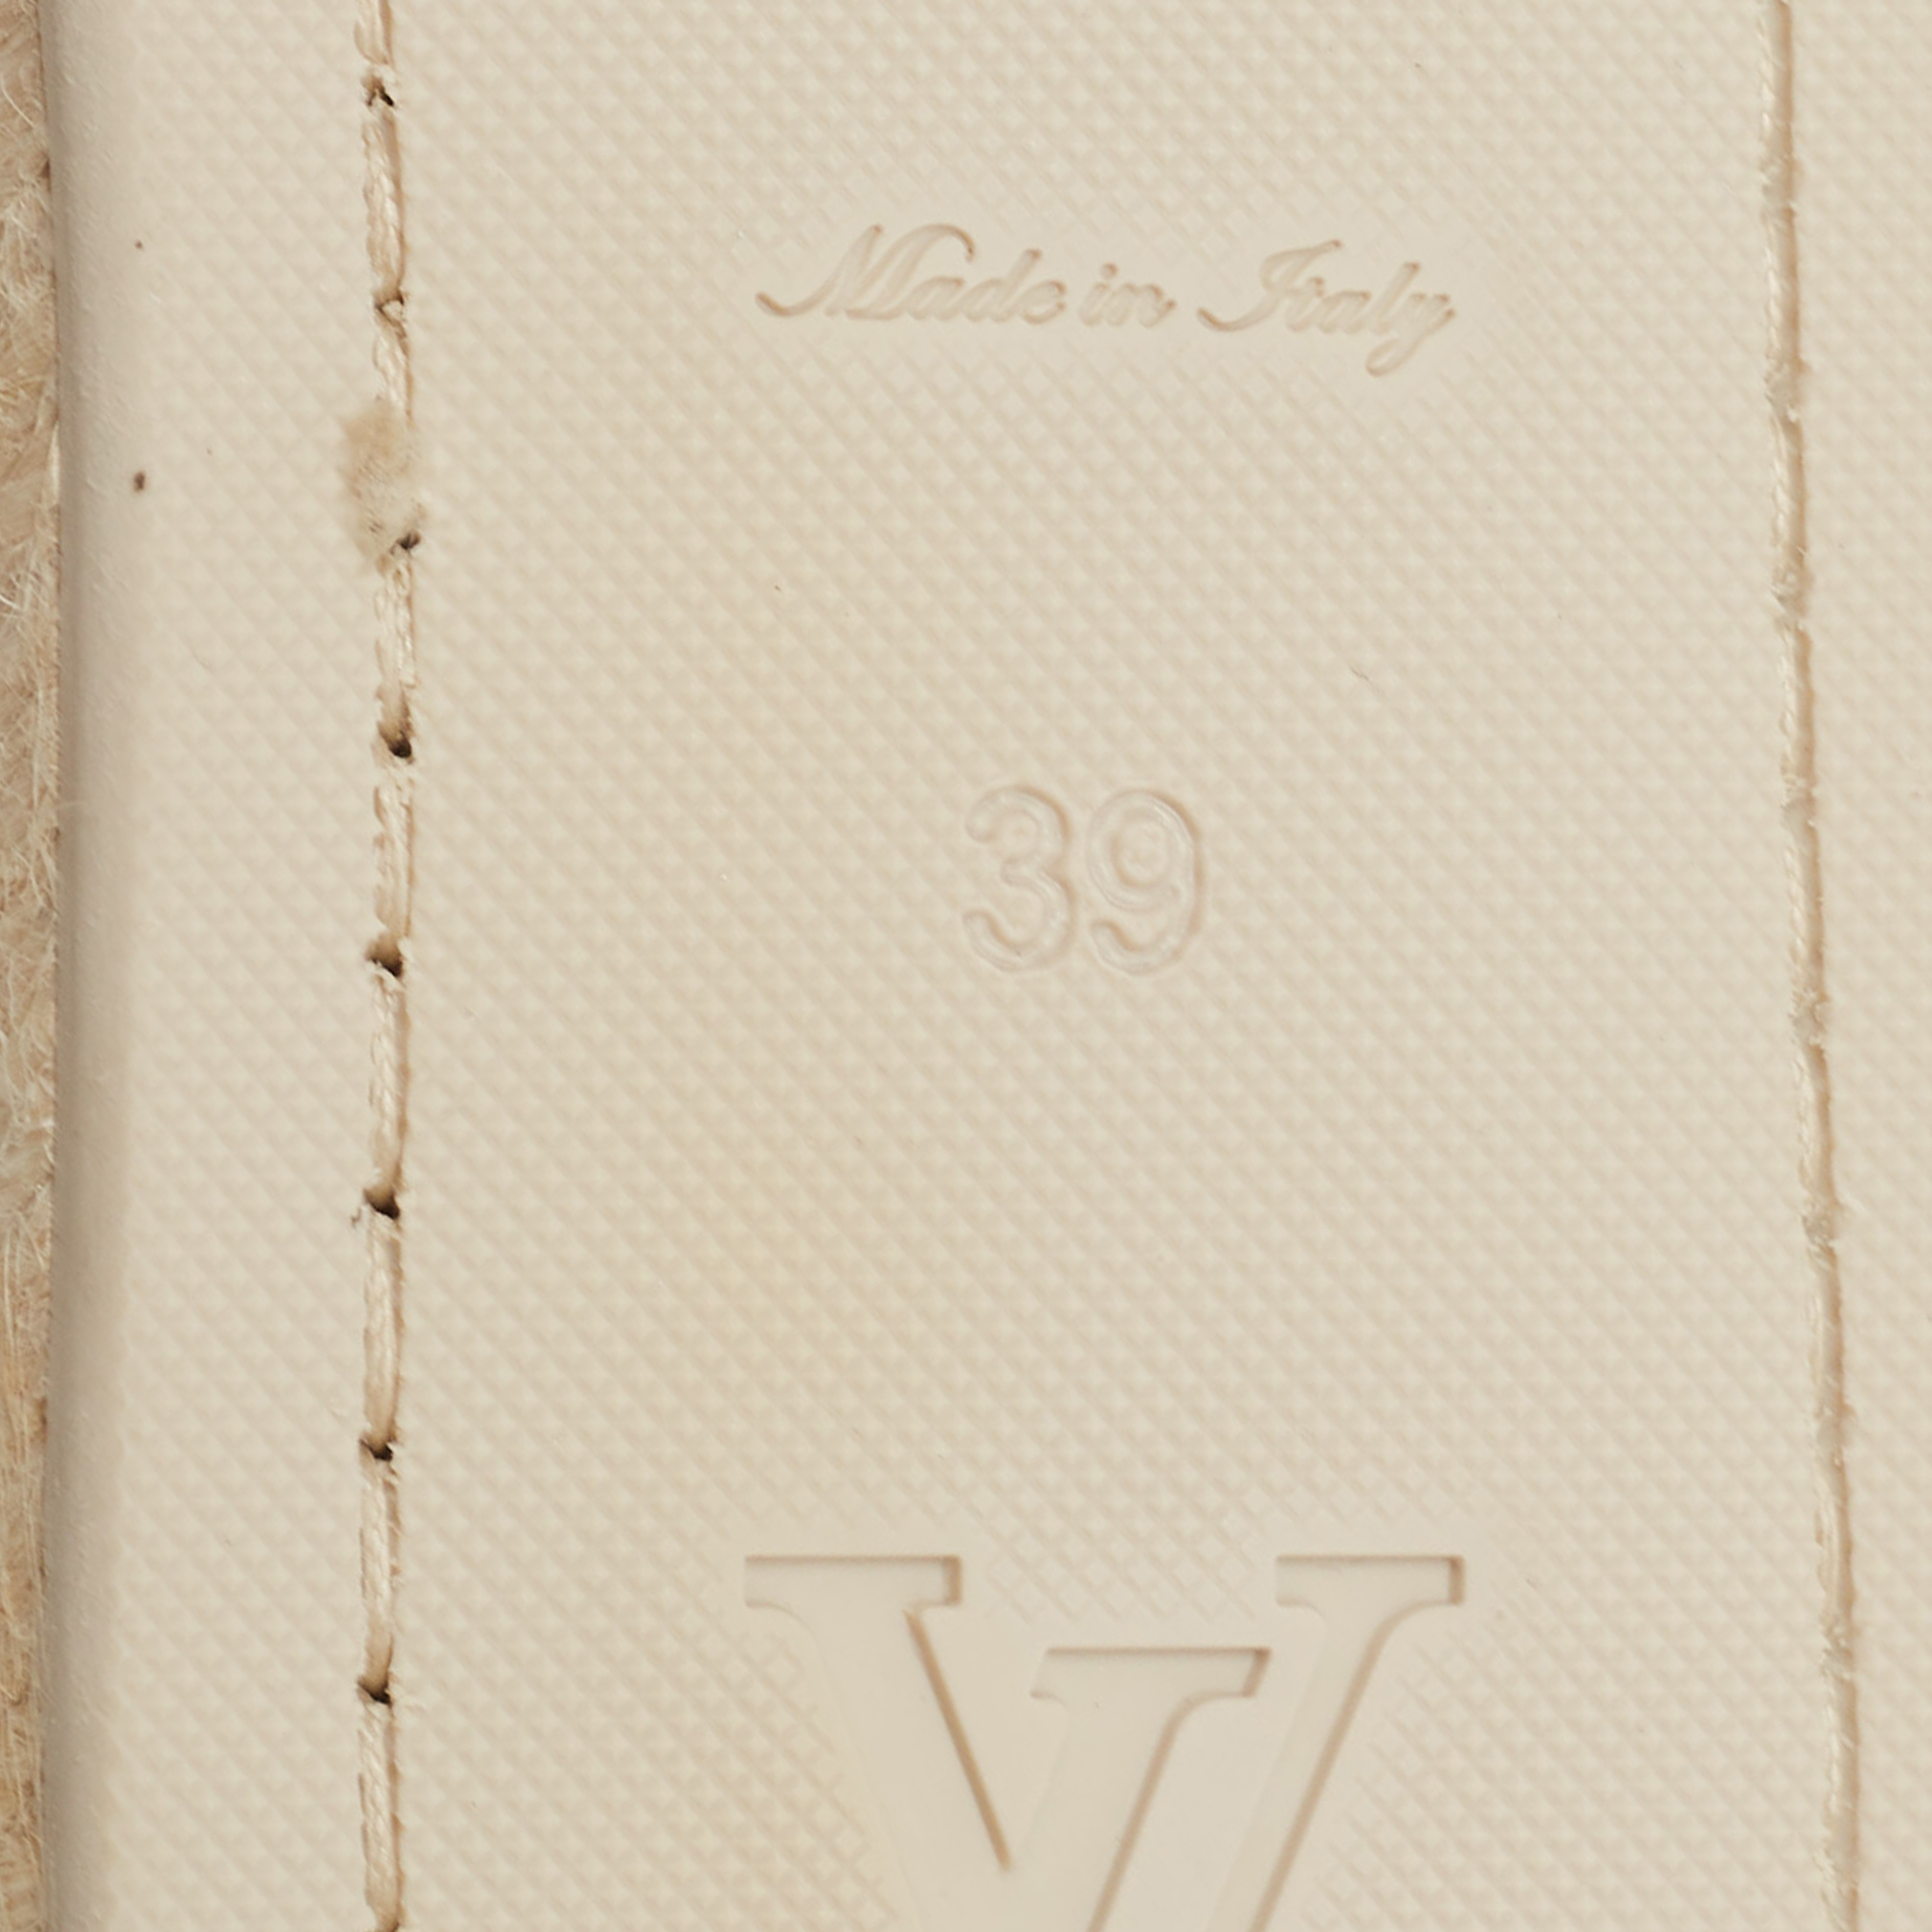 Louis Vuitton White Canvas And Leather Articles De Voyage Espadrille Flats Size 39